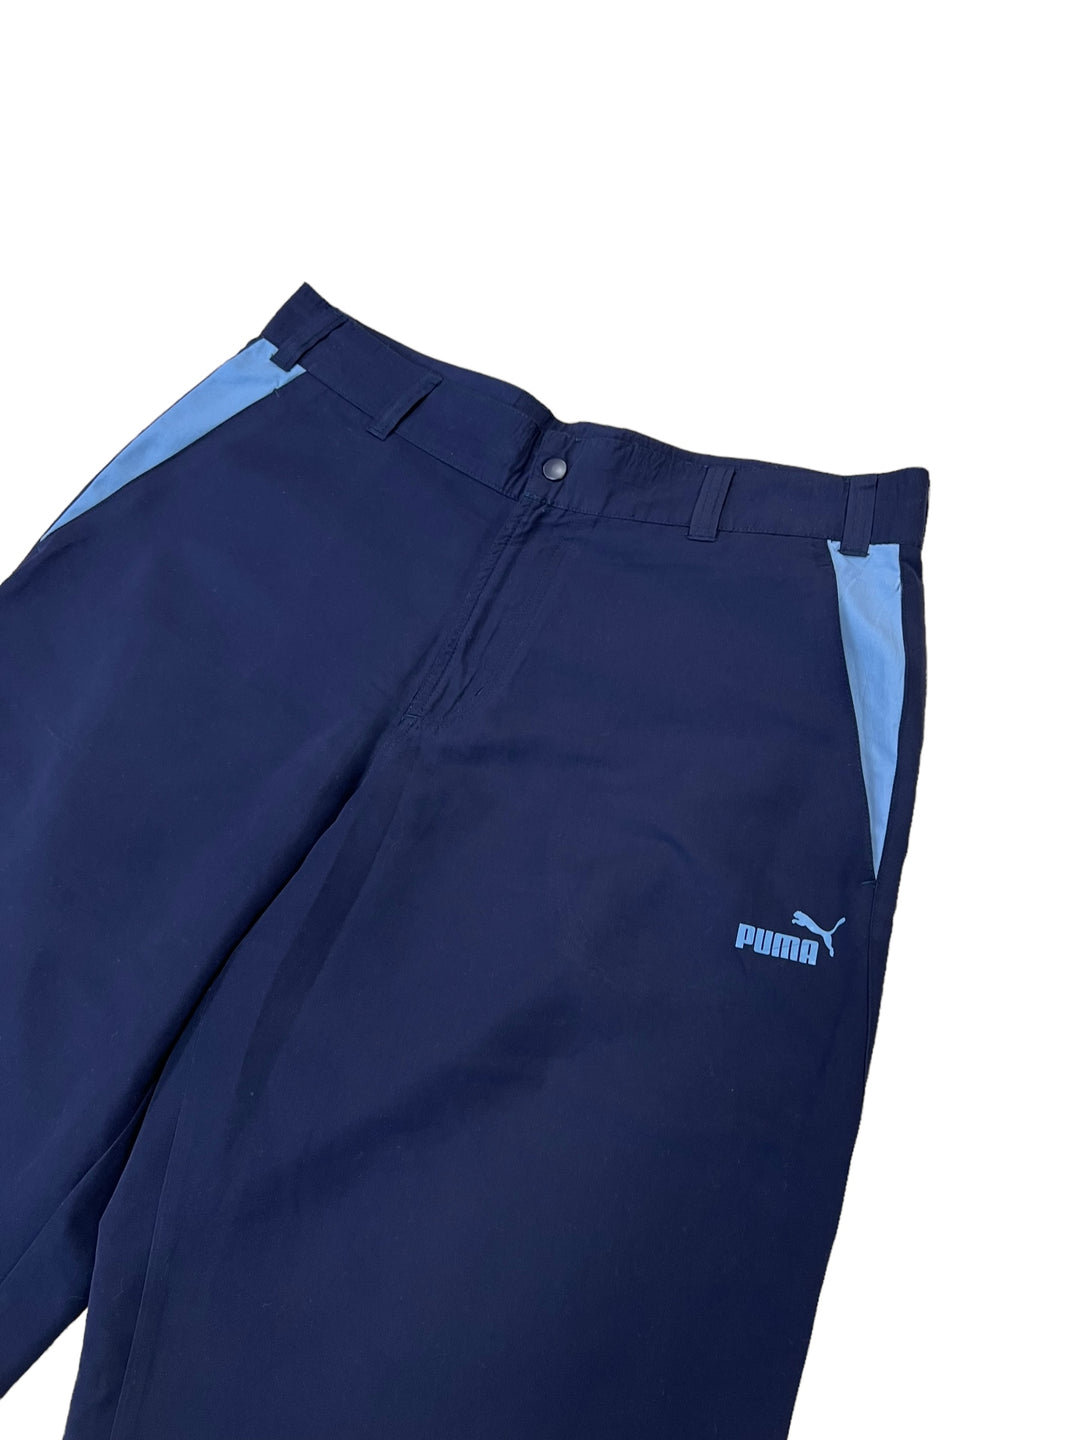 Puma Vintage Capri sweatpants men’s large